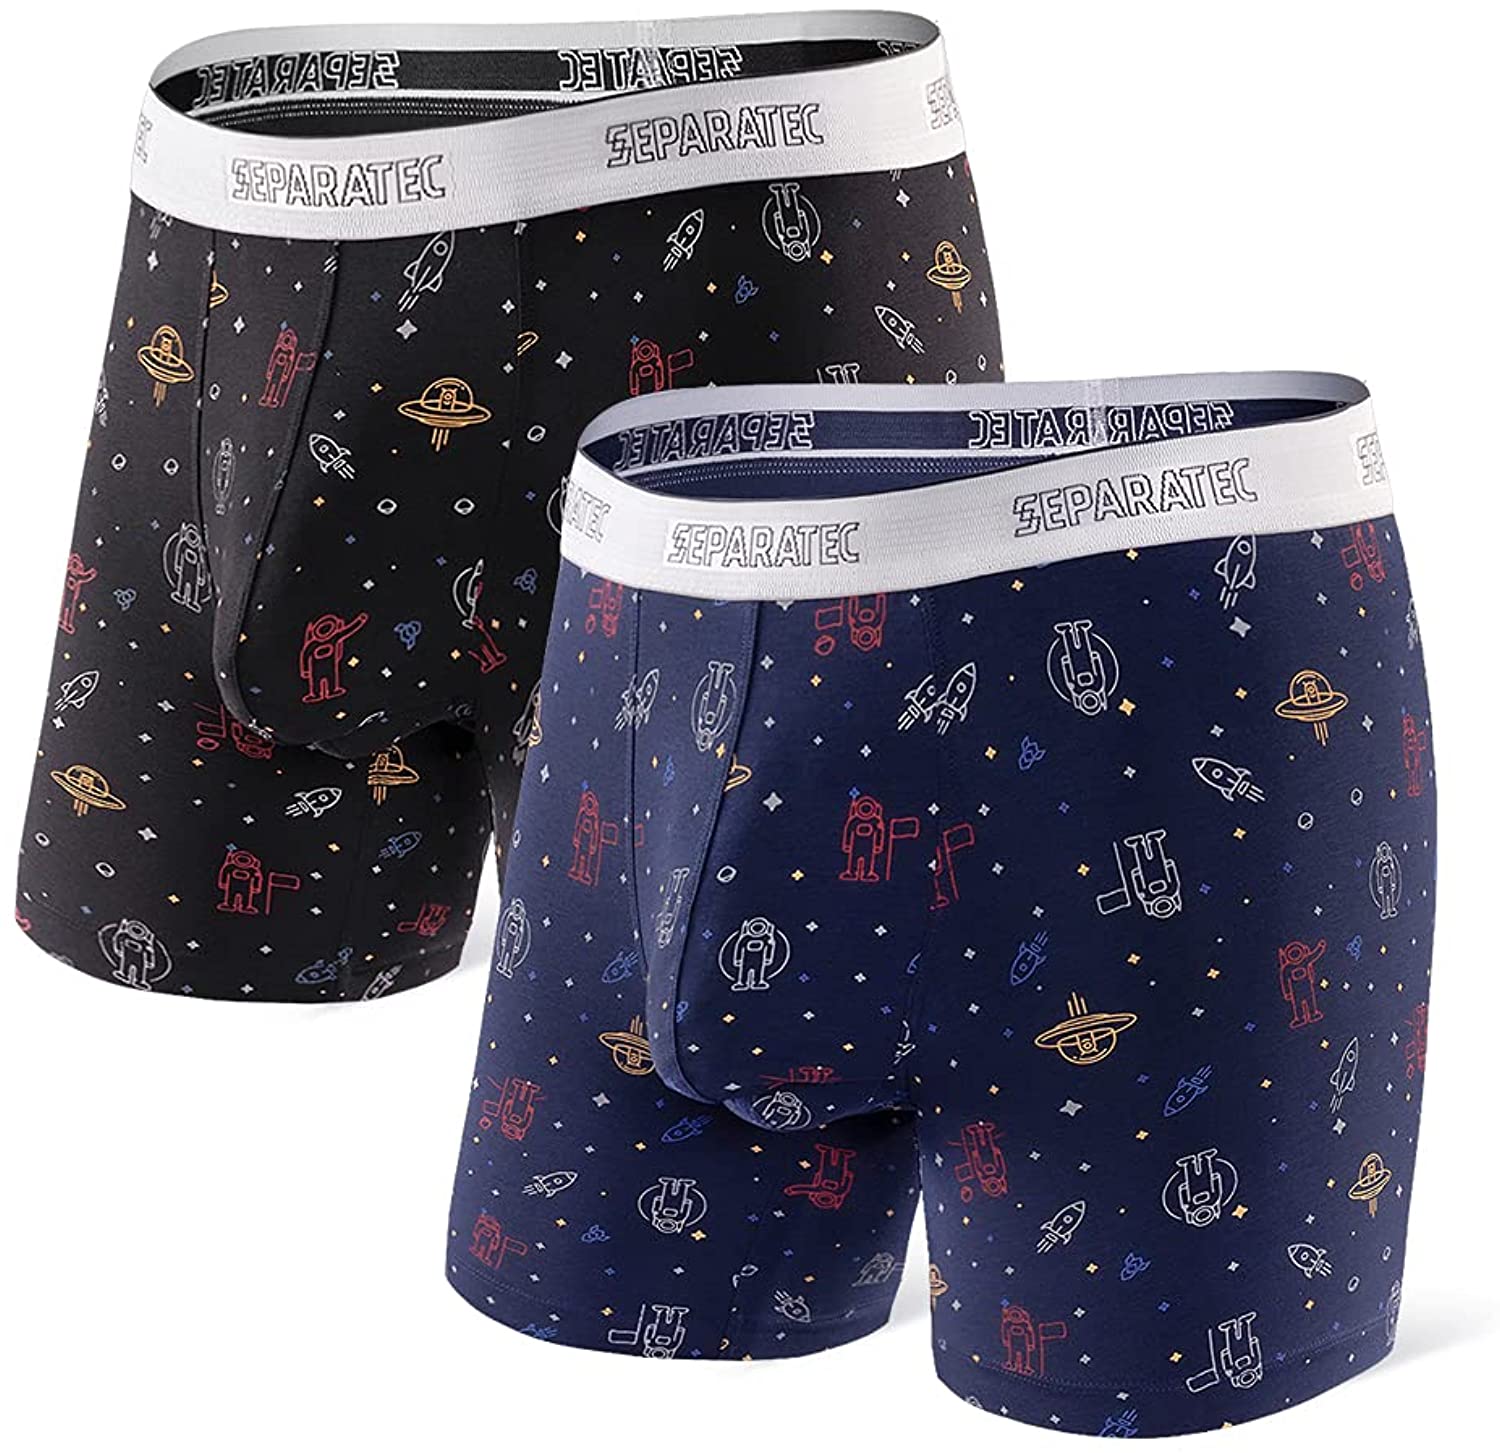 Separatec Men's Underwear Trunks Dual Pouch Boxer Shorts Comfort Flex Fit  Premium Cotton Modal Blend Boxer Briefs 3 Pack - ShopStyle